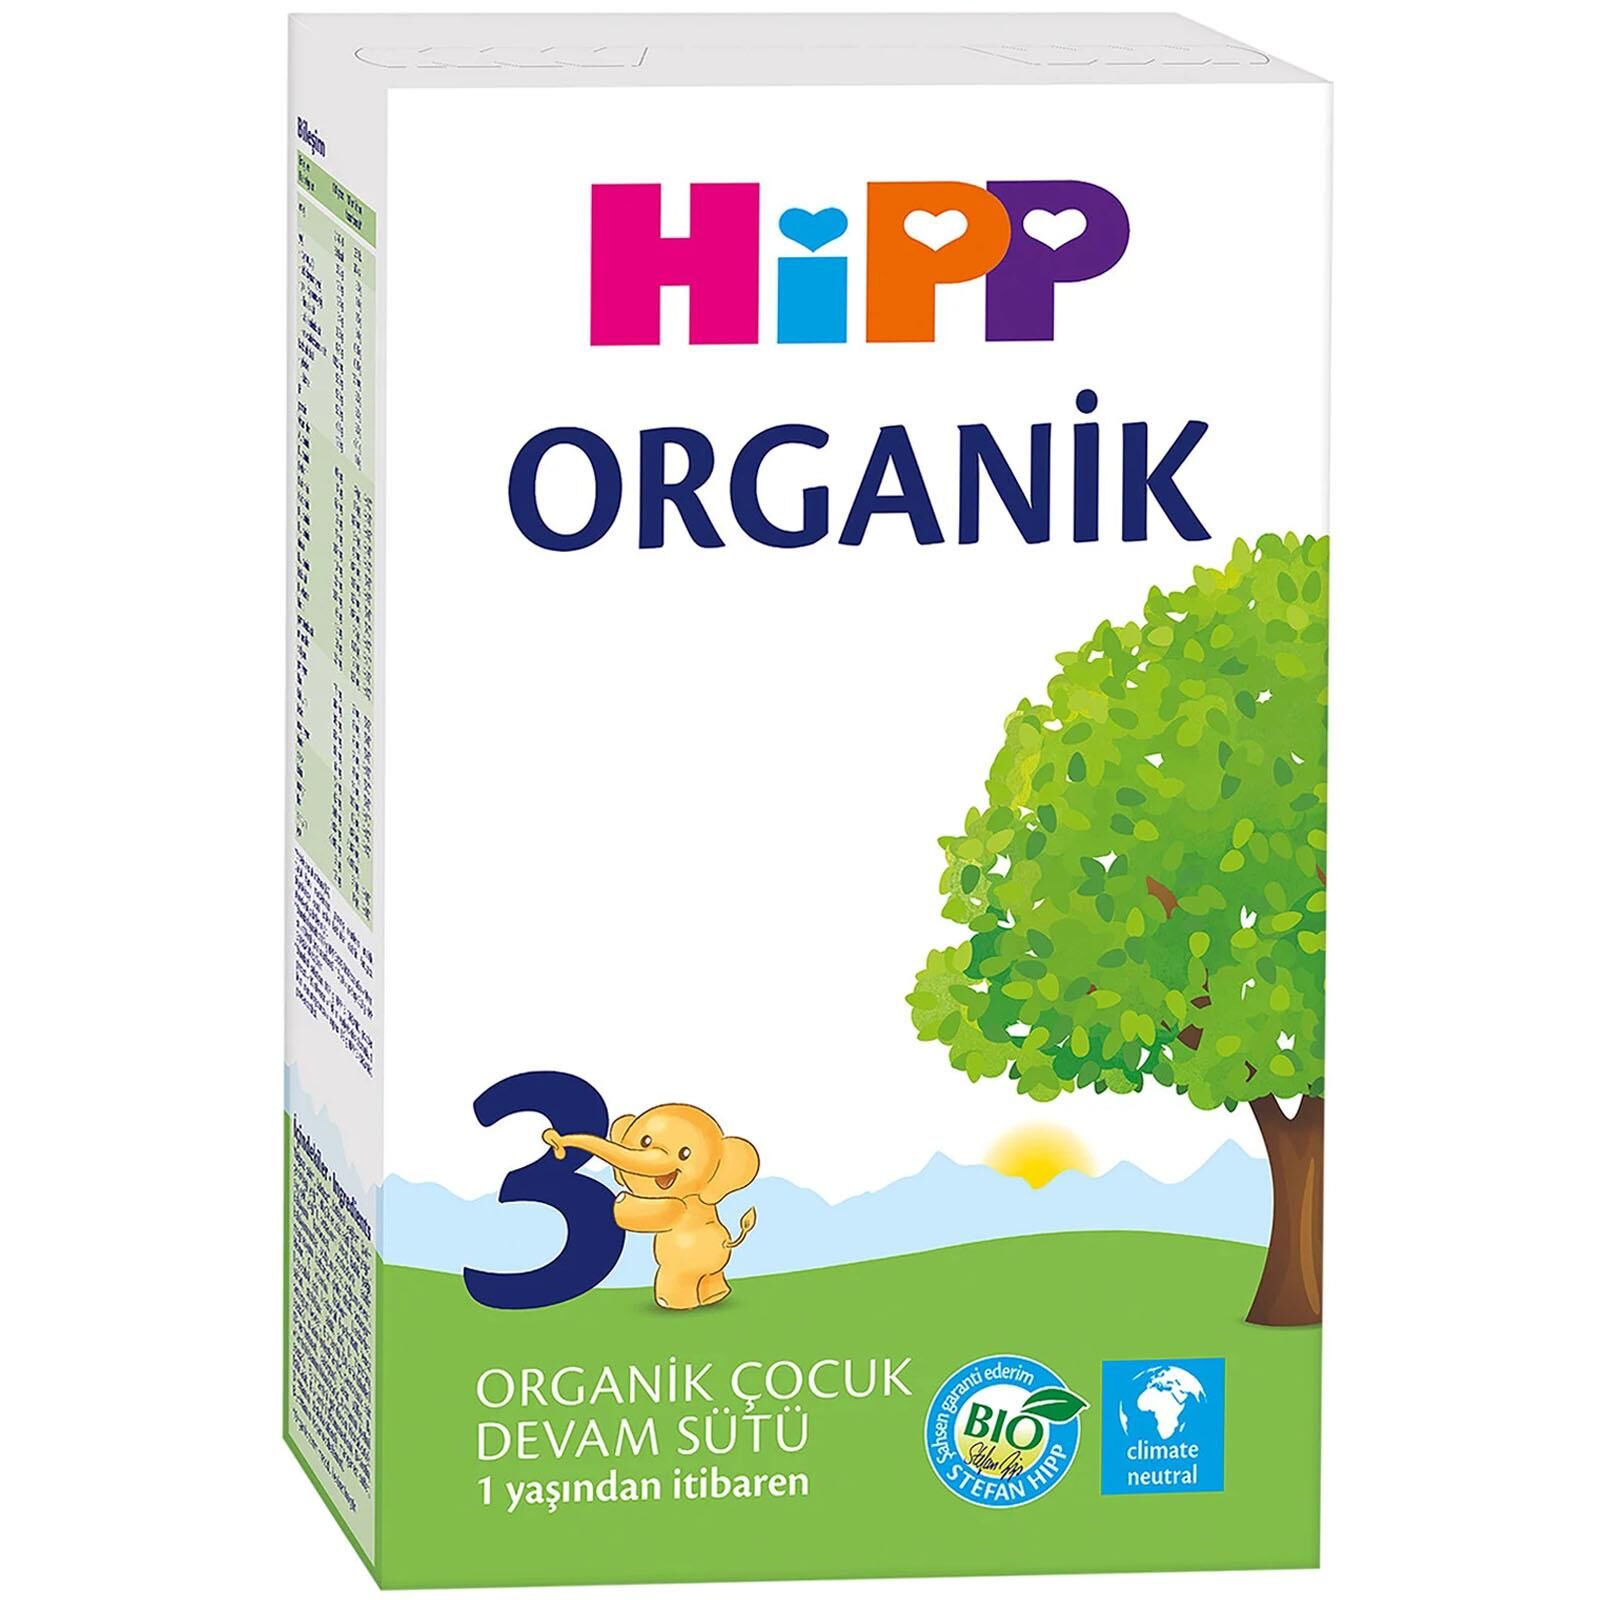 Hipp 3 Organik Devam Sütü 300 gr